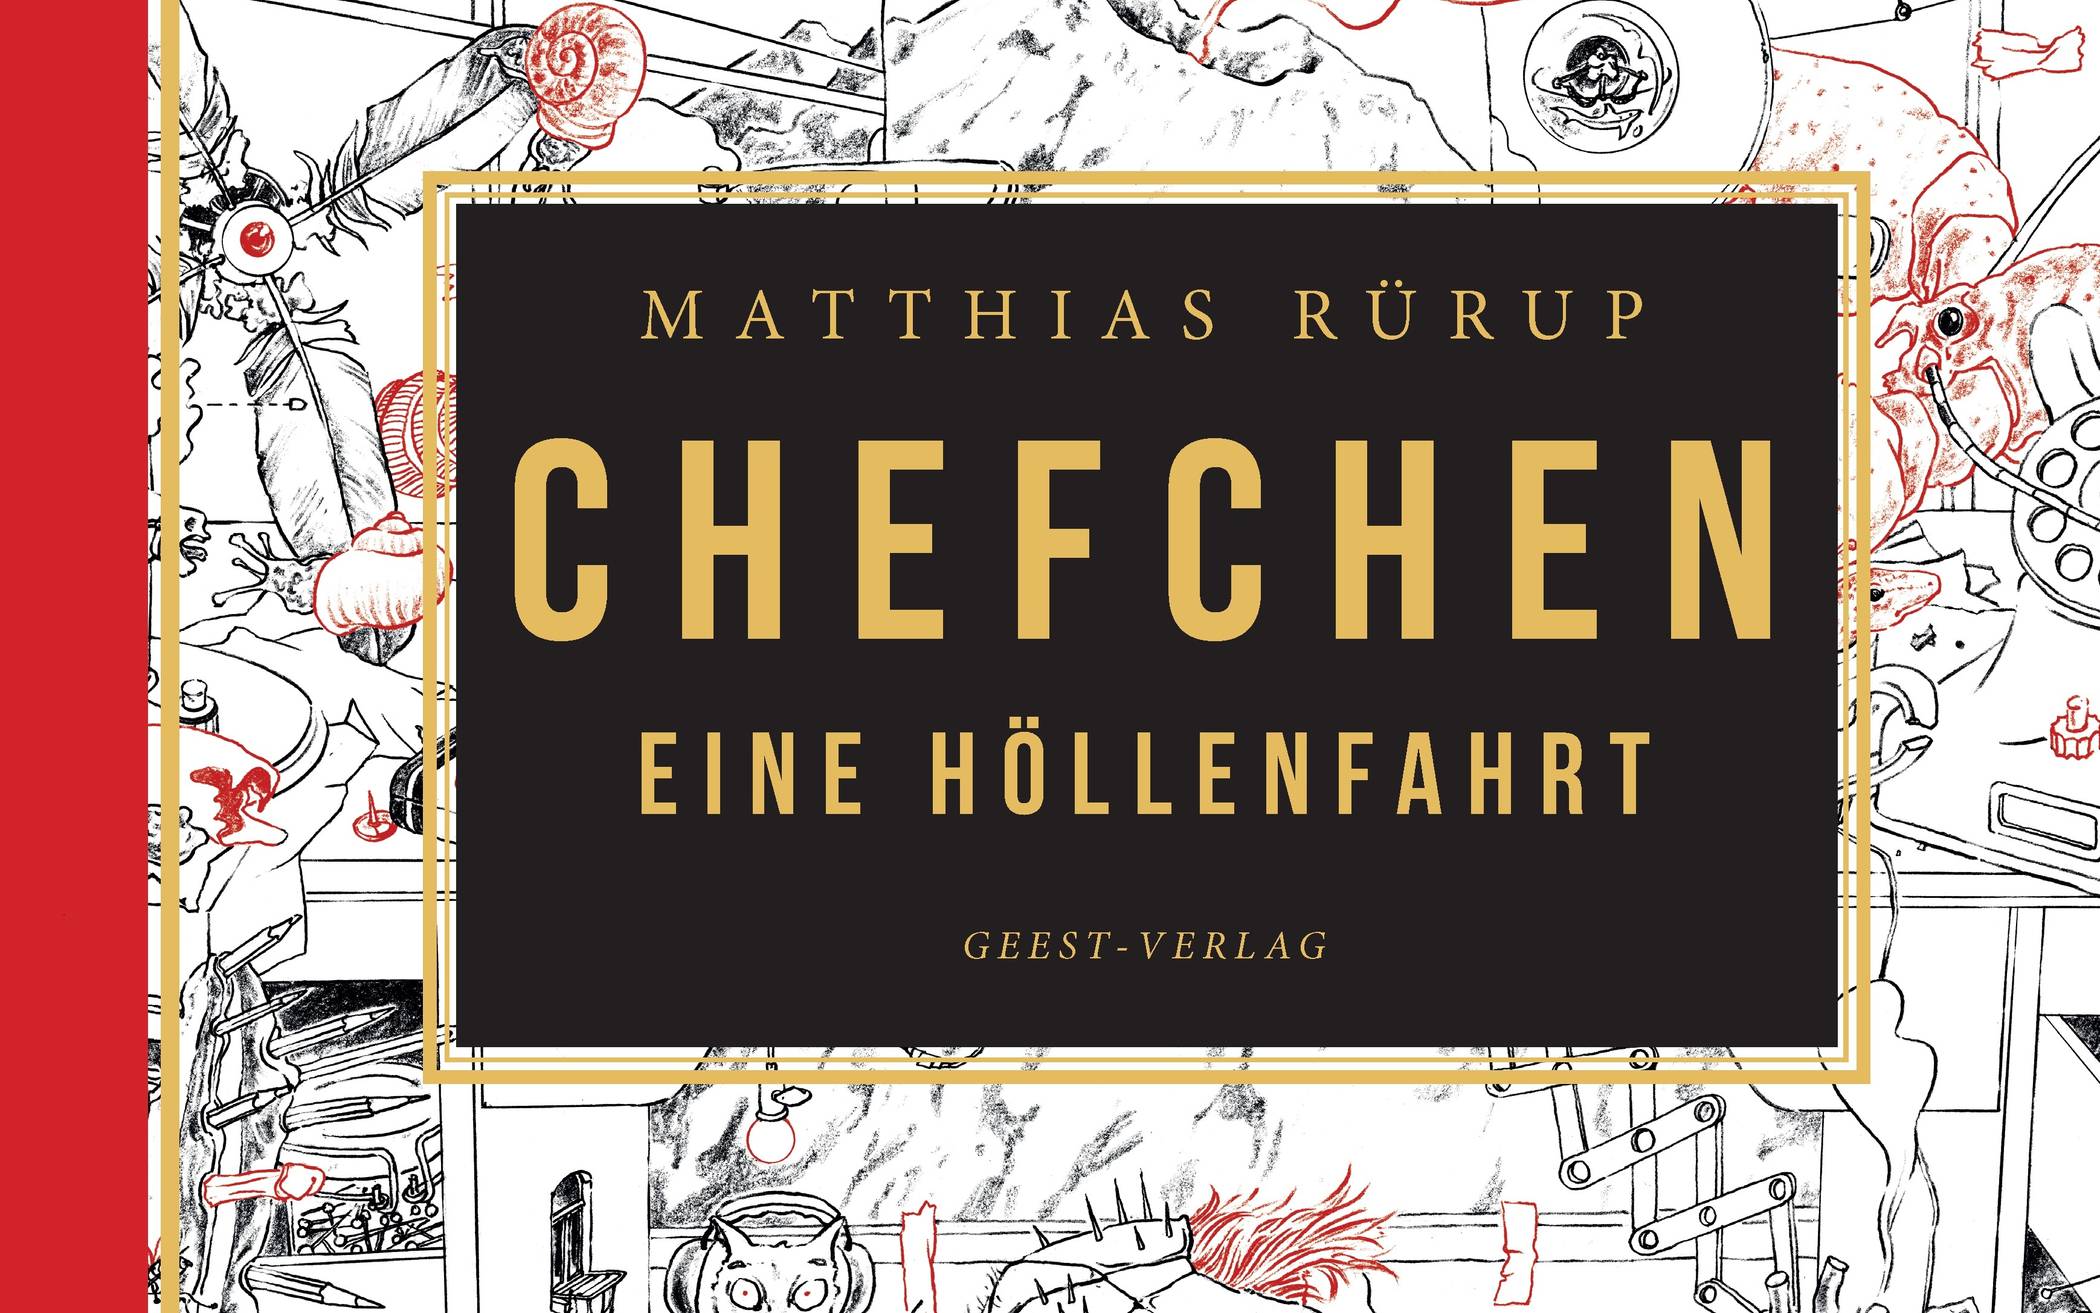  „Chefchen – Eine Höllenfahrt“ mit Gedichten von Matthias Rürup und Illustrationen von Robert Voss ist im Geest-Verlag erschienen und kostet 28 Euro. 